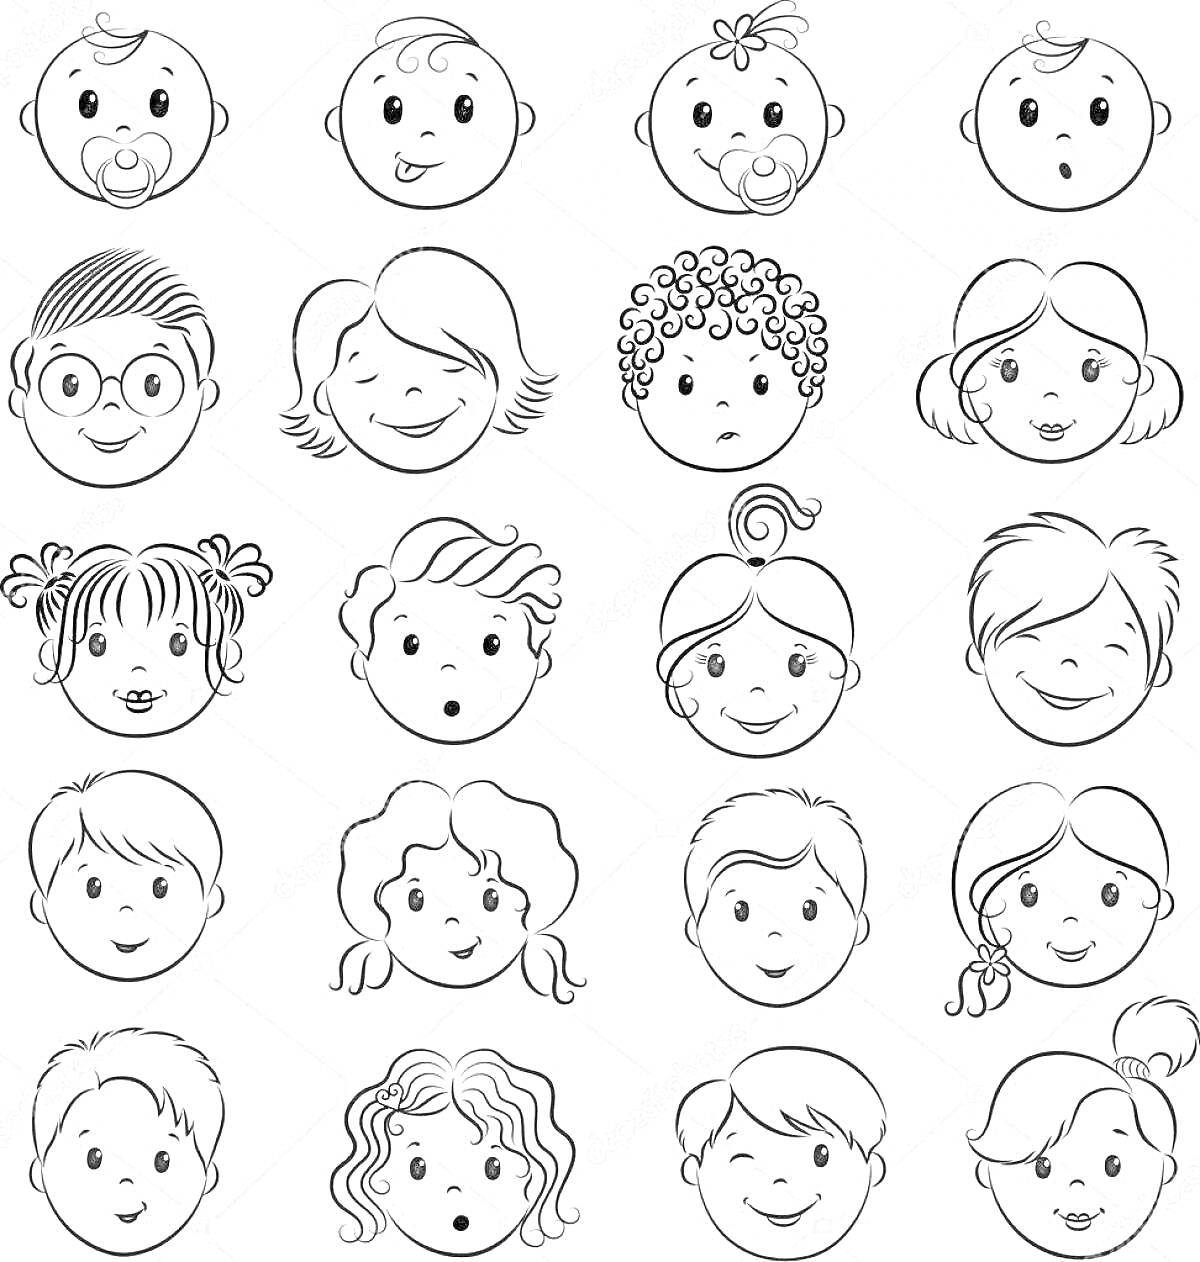 Раскраска Рисунок с 20 детскими лицами, выражающими разные эмоции